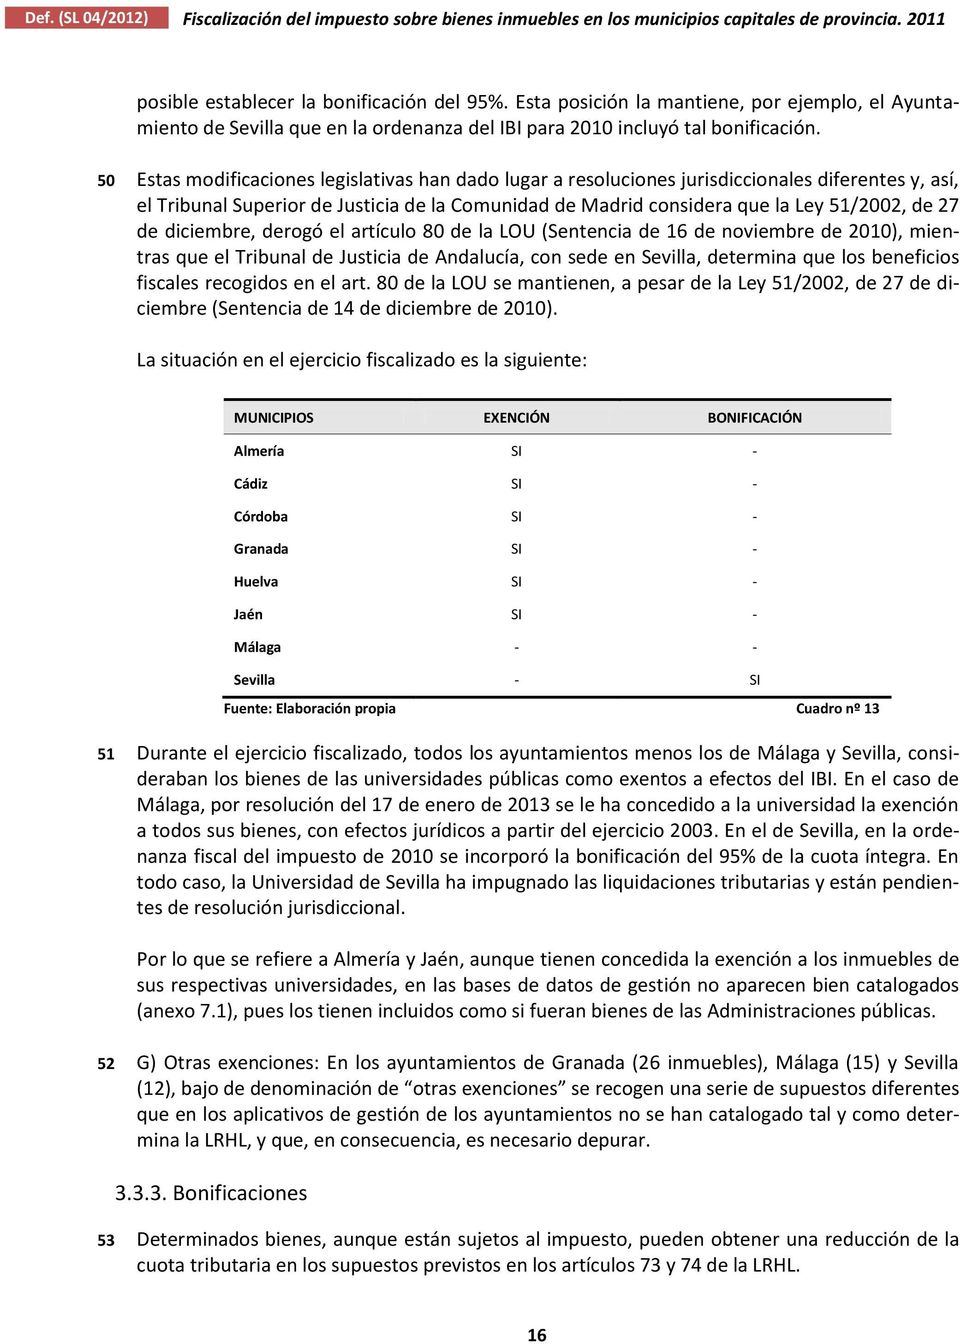 50 Estas modificaciones legislativas han dado lugar a resoluciones jurisdiccionales diferentes y, así, el Tribunal Superior de Justicia de la Comunidad de Madrid considera que la Ley 51/2002, de 27